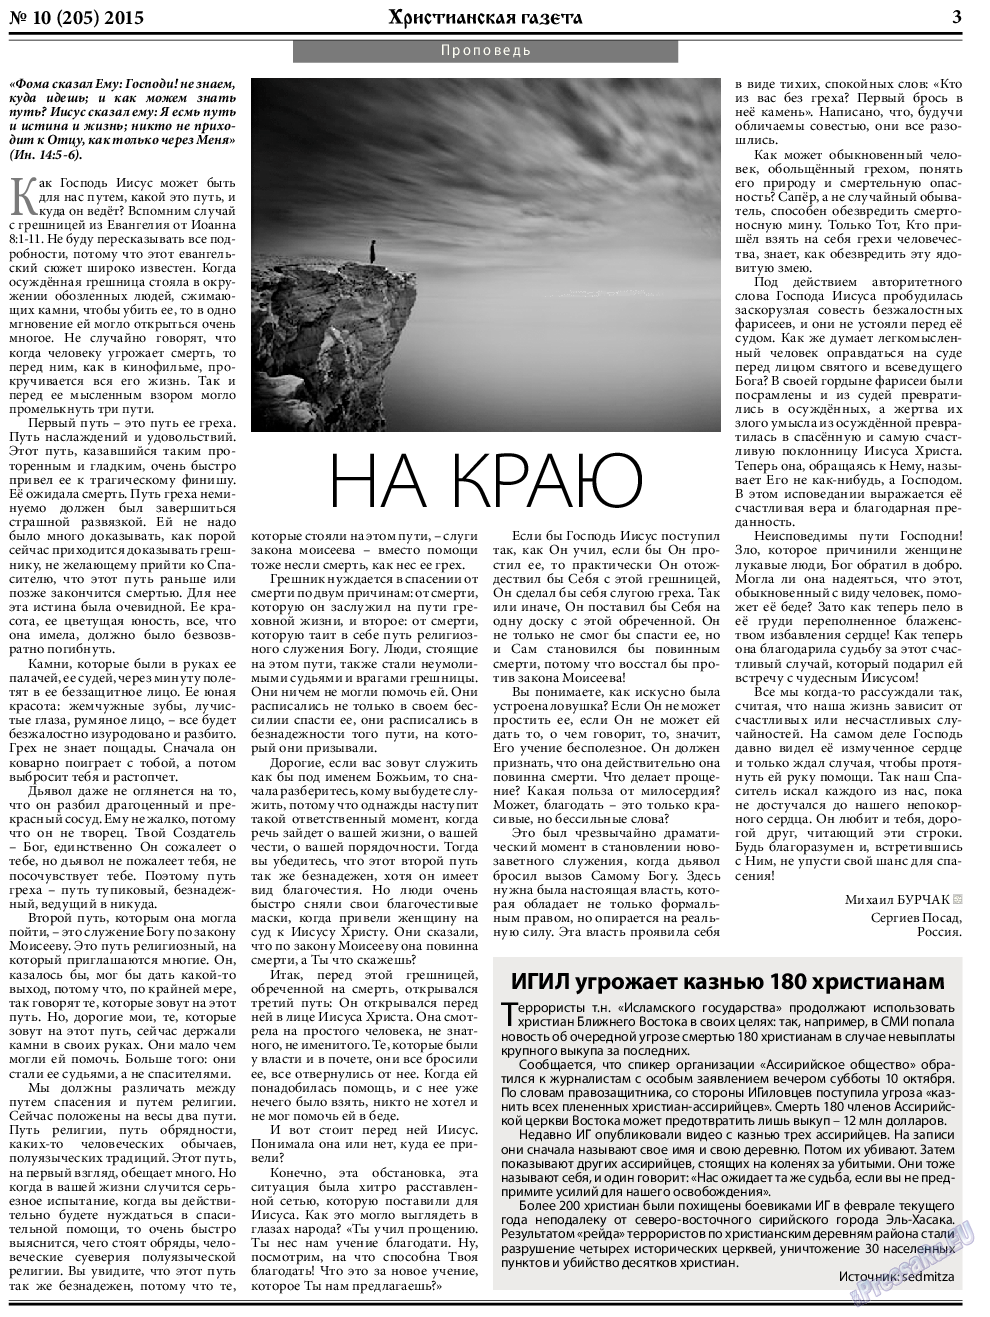 Христианская газета, газета. 2015 №10 стр.3